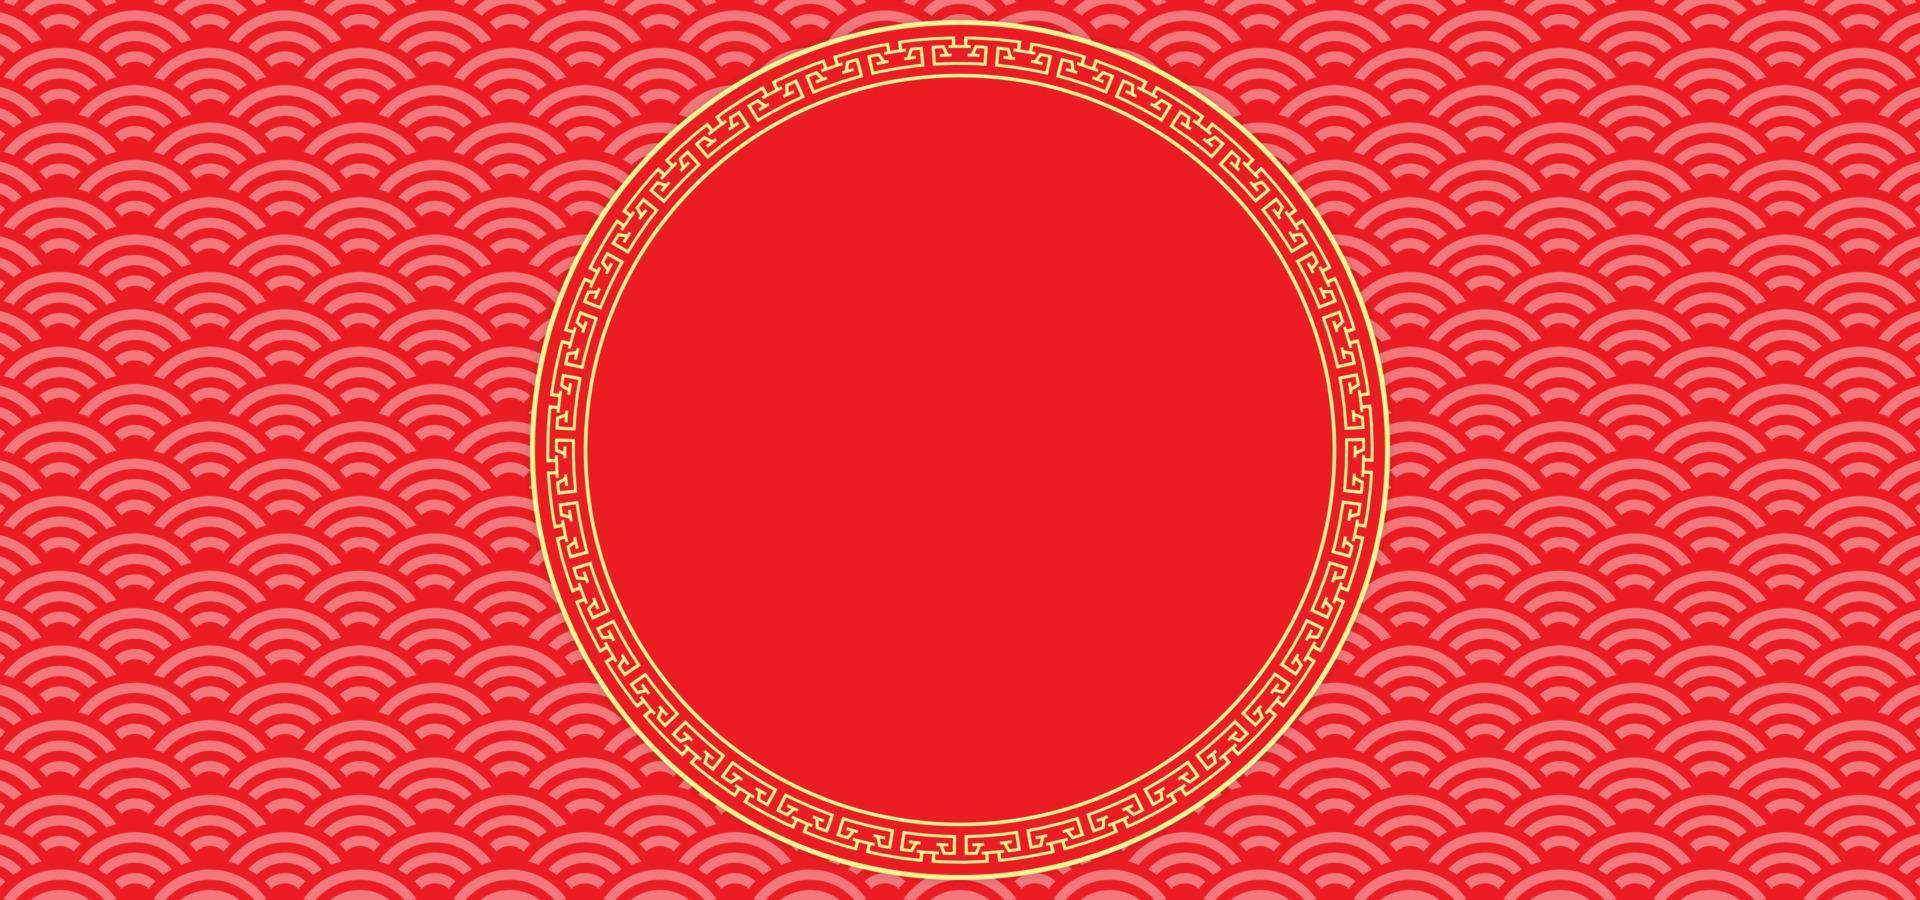 fondo de año nuevo chino con espacio en blanco para texto. tema de fondo rojo y dorado con textura de patrón y adorno. ilustración vectorial vector